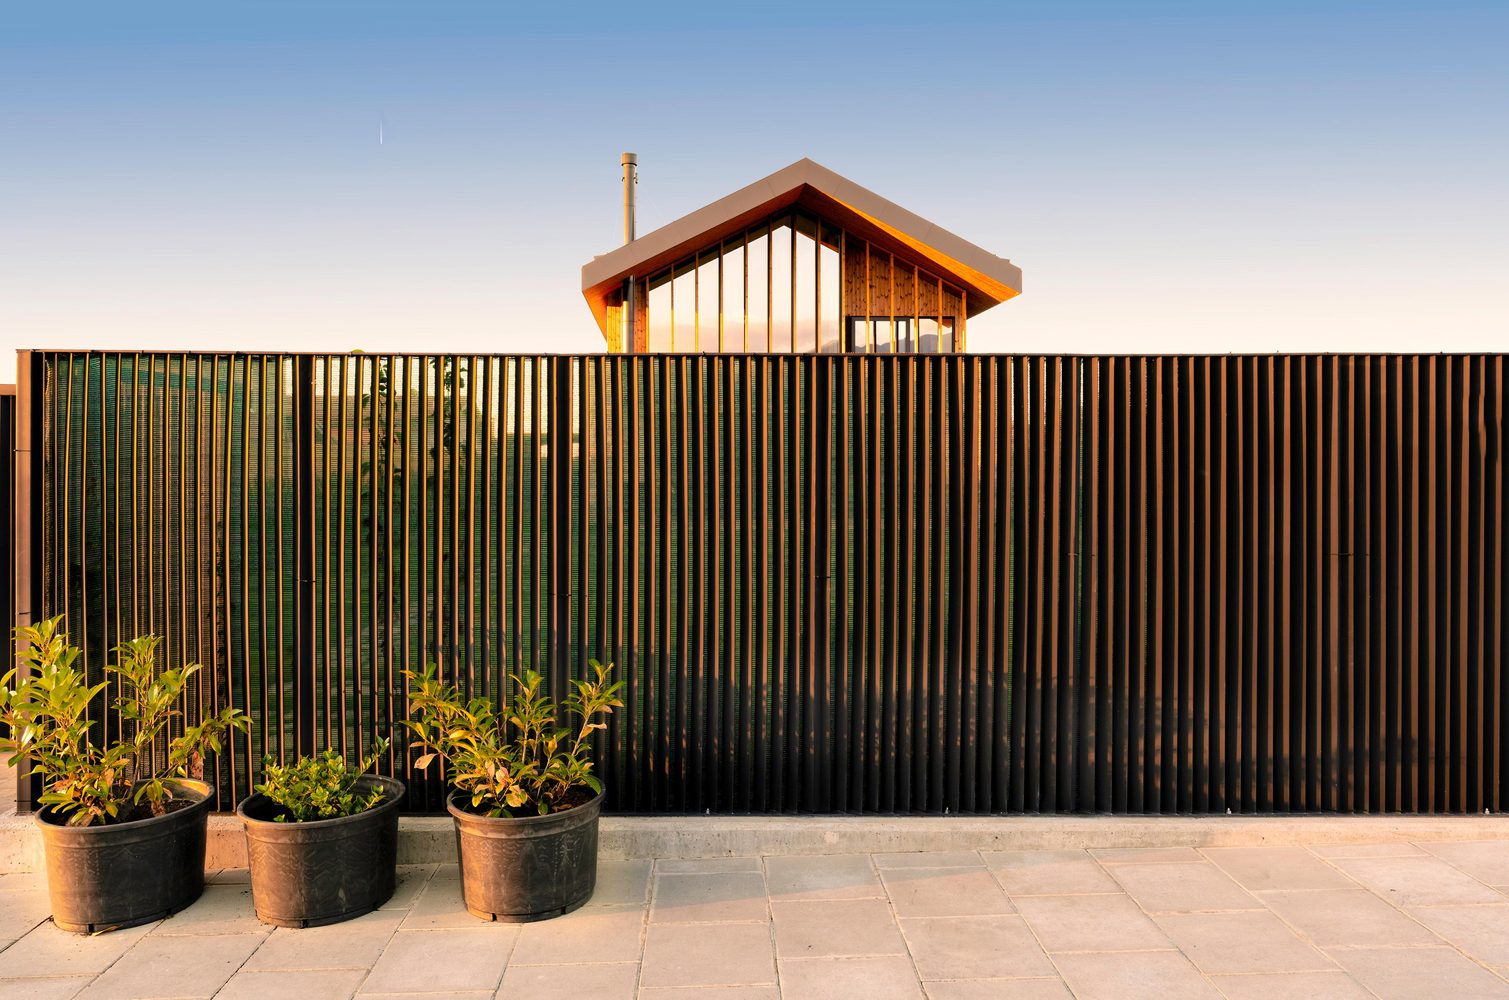  Hàng rào gỗ tách biệt tạo sự riêng tư cho cuộc sống bên trong.